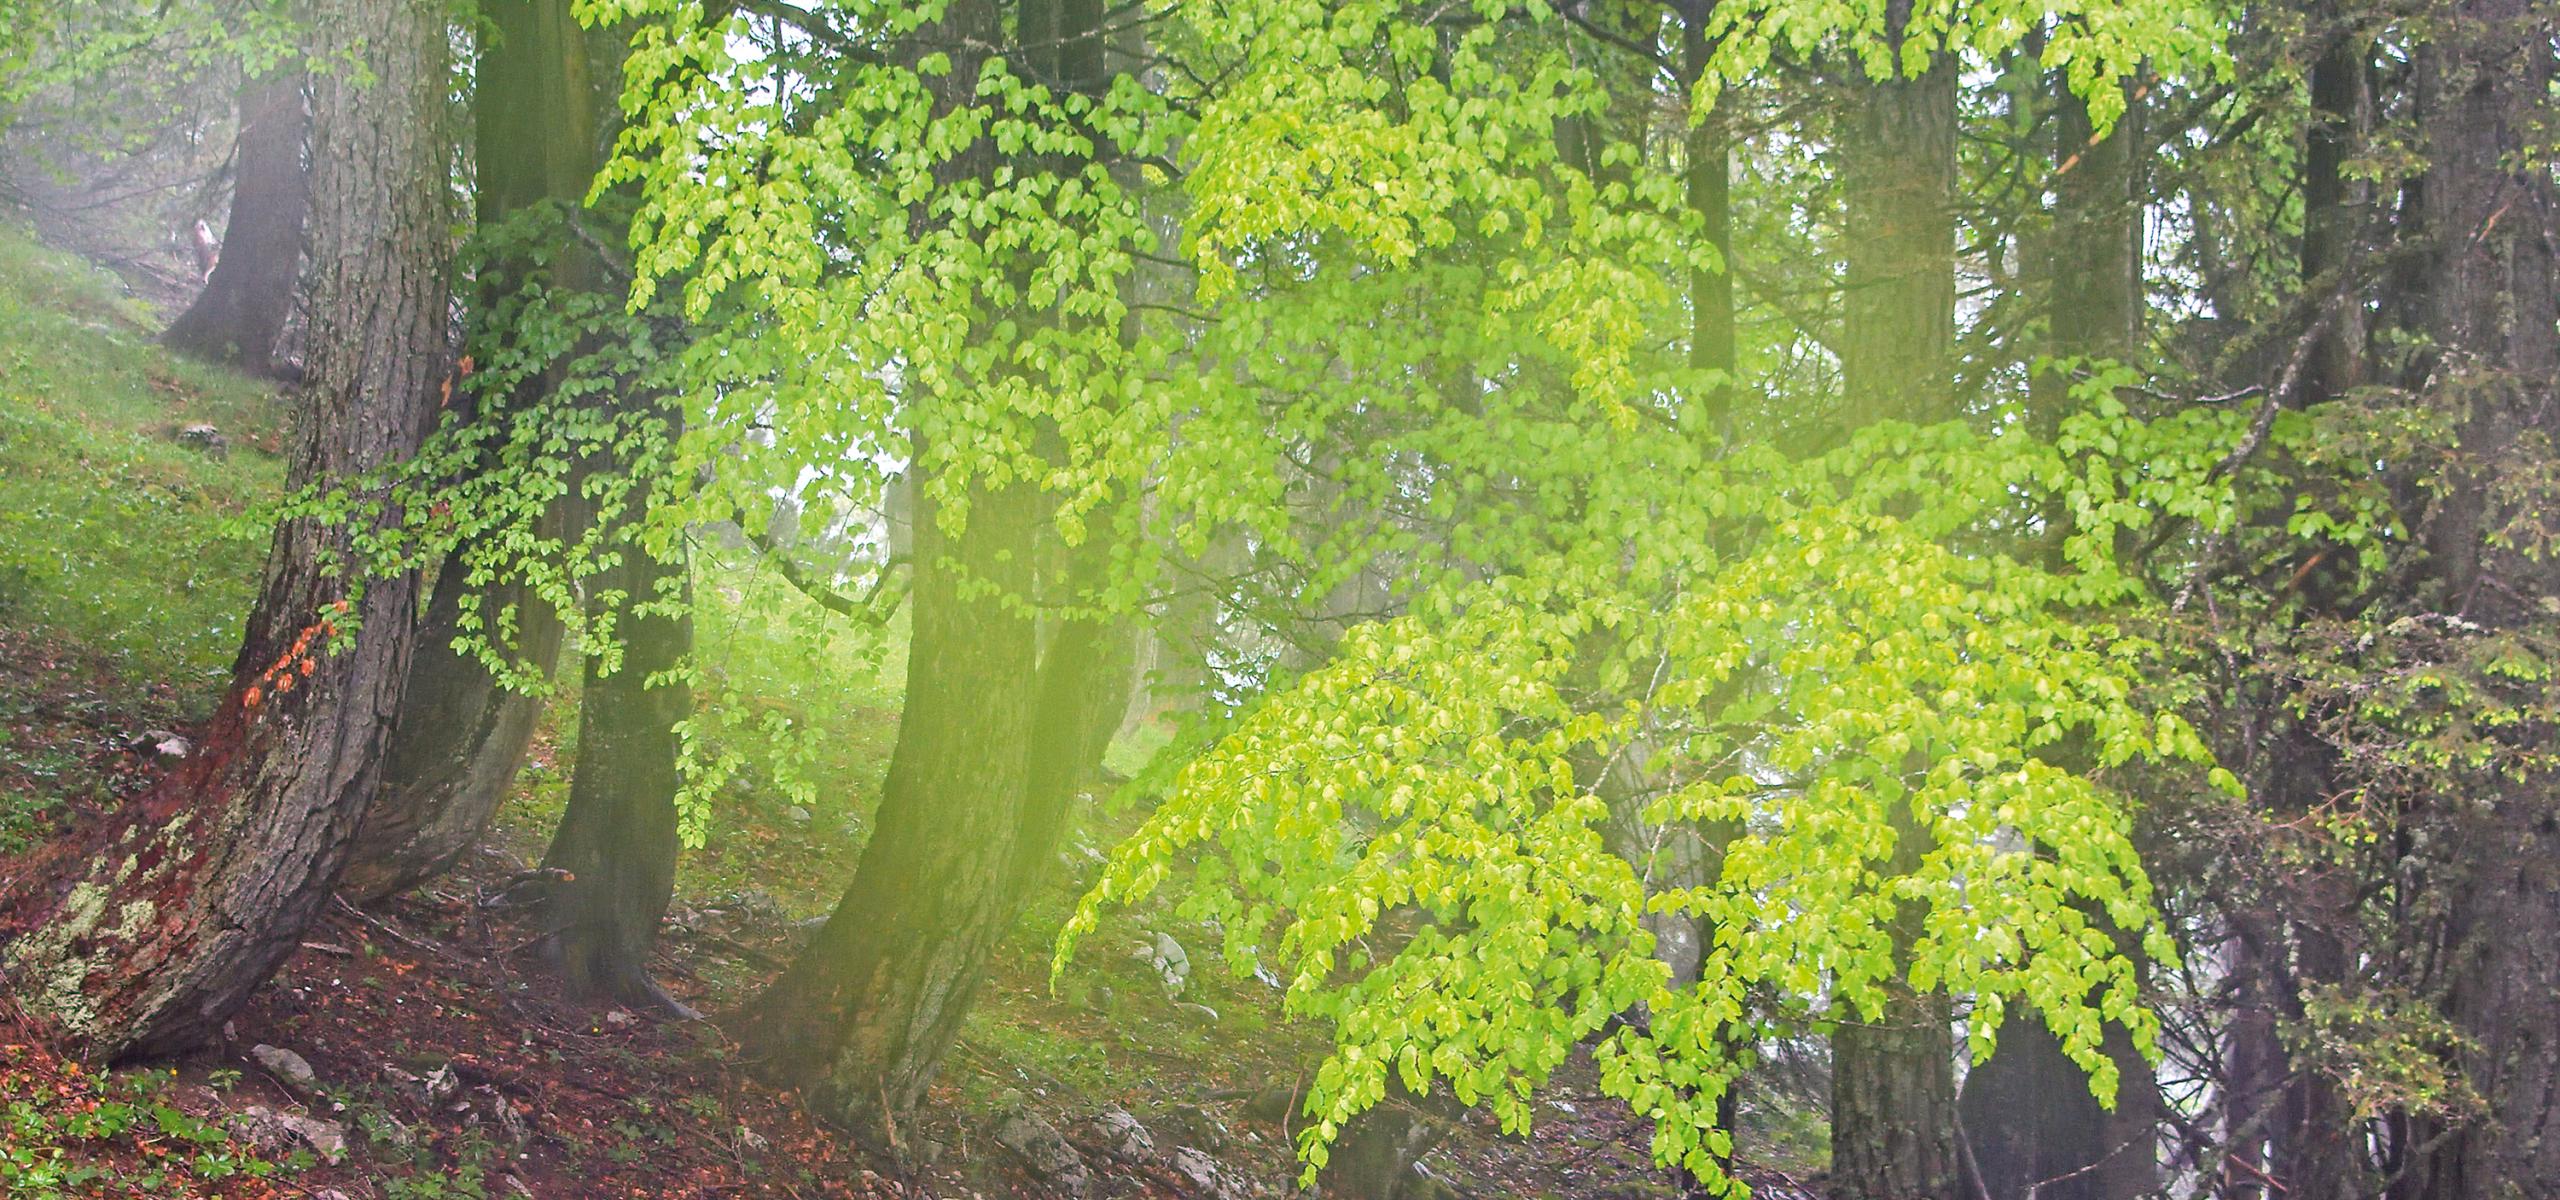 Vlhký opar nad horským lesem s čerstvě vyrašenými bukovými listy